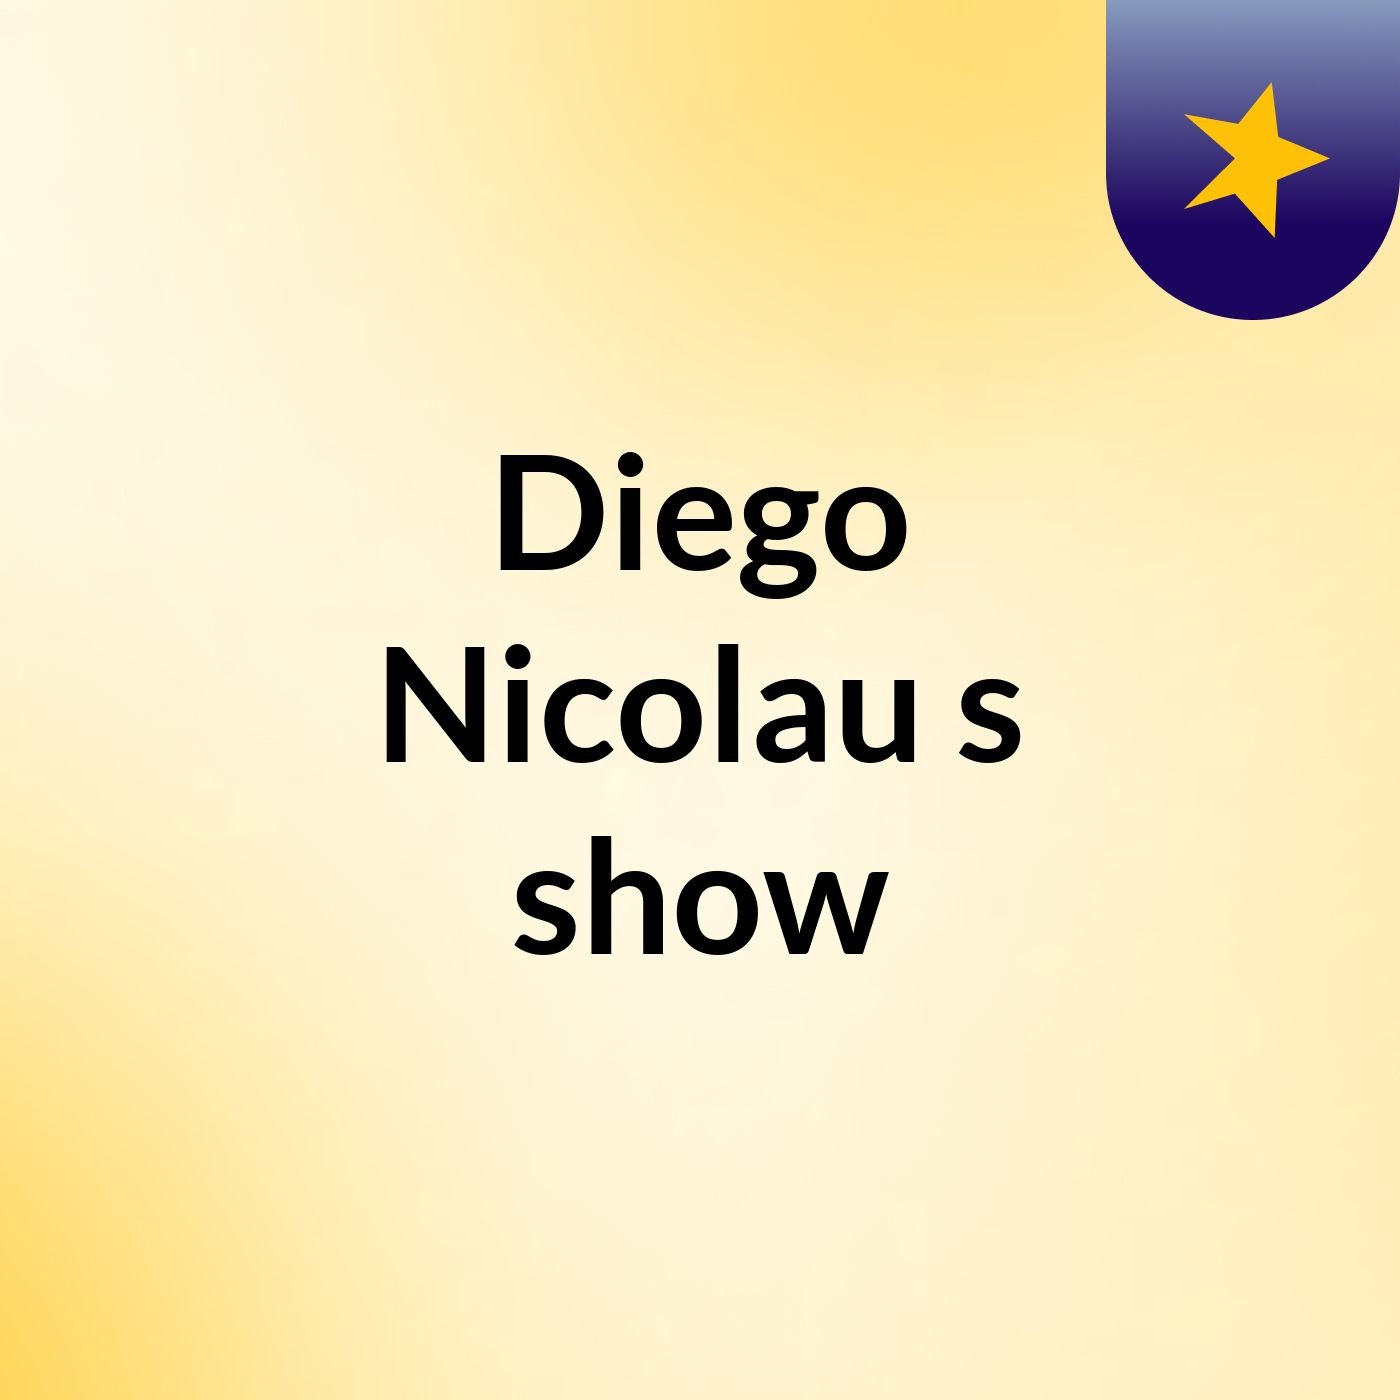 Diego Nicolau's show